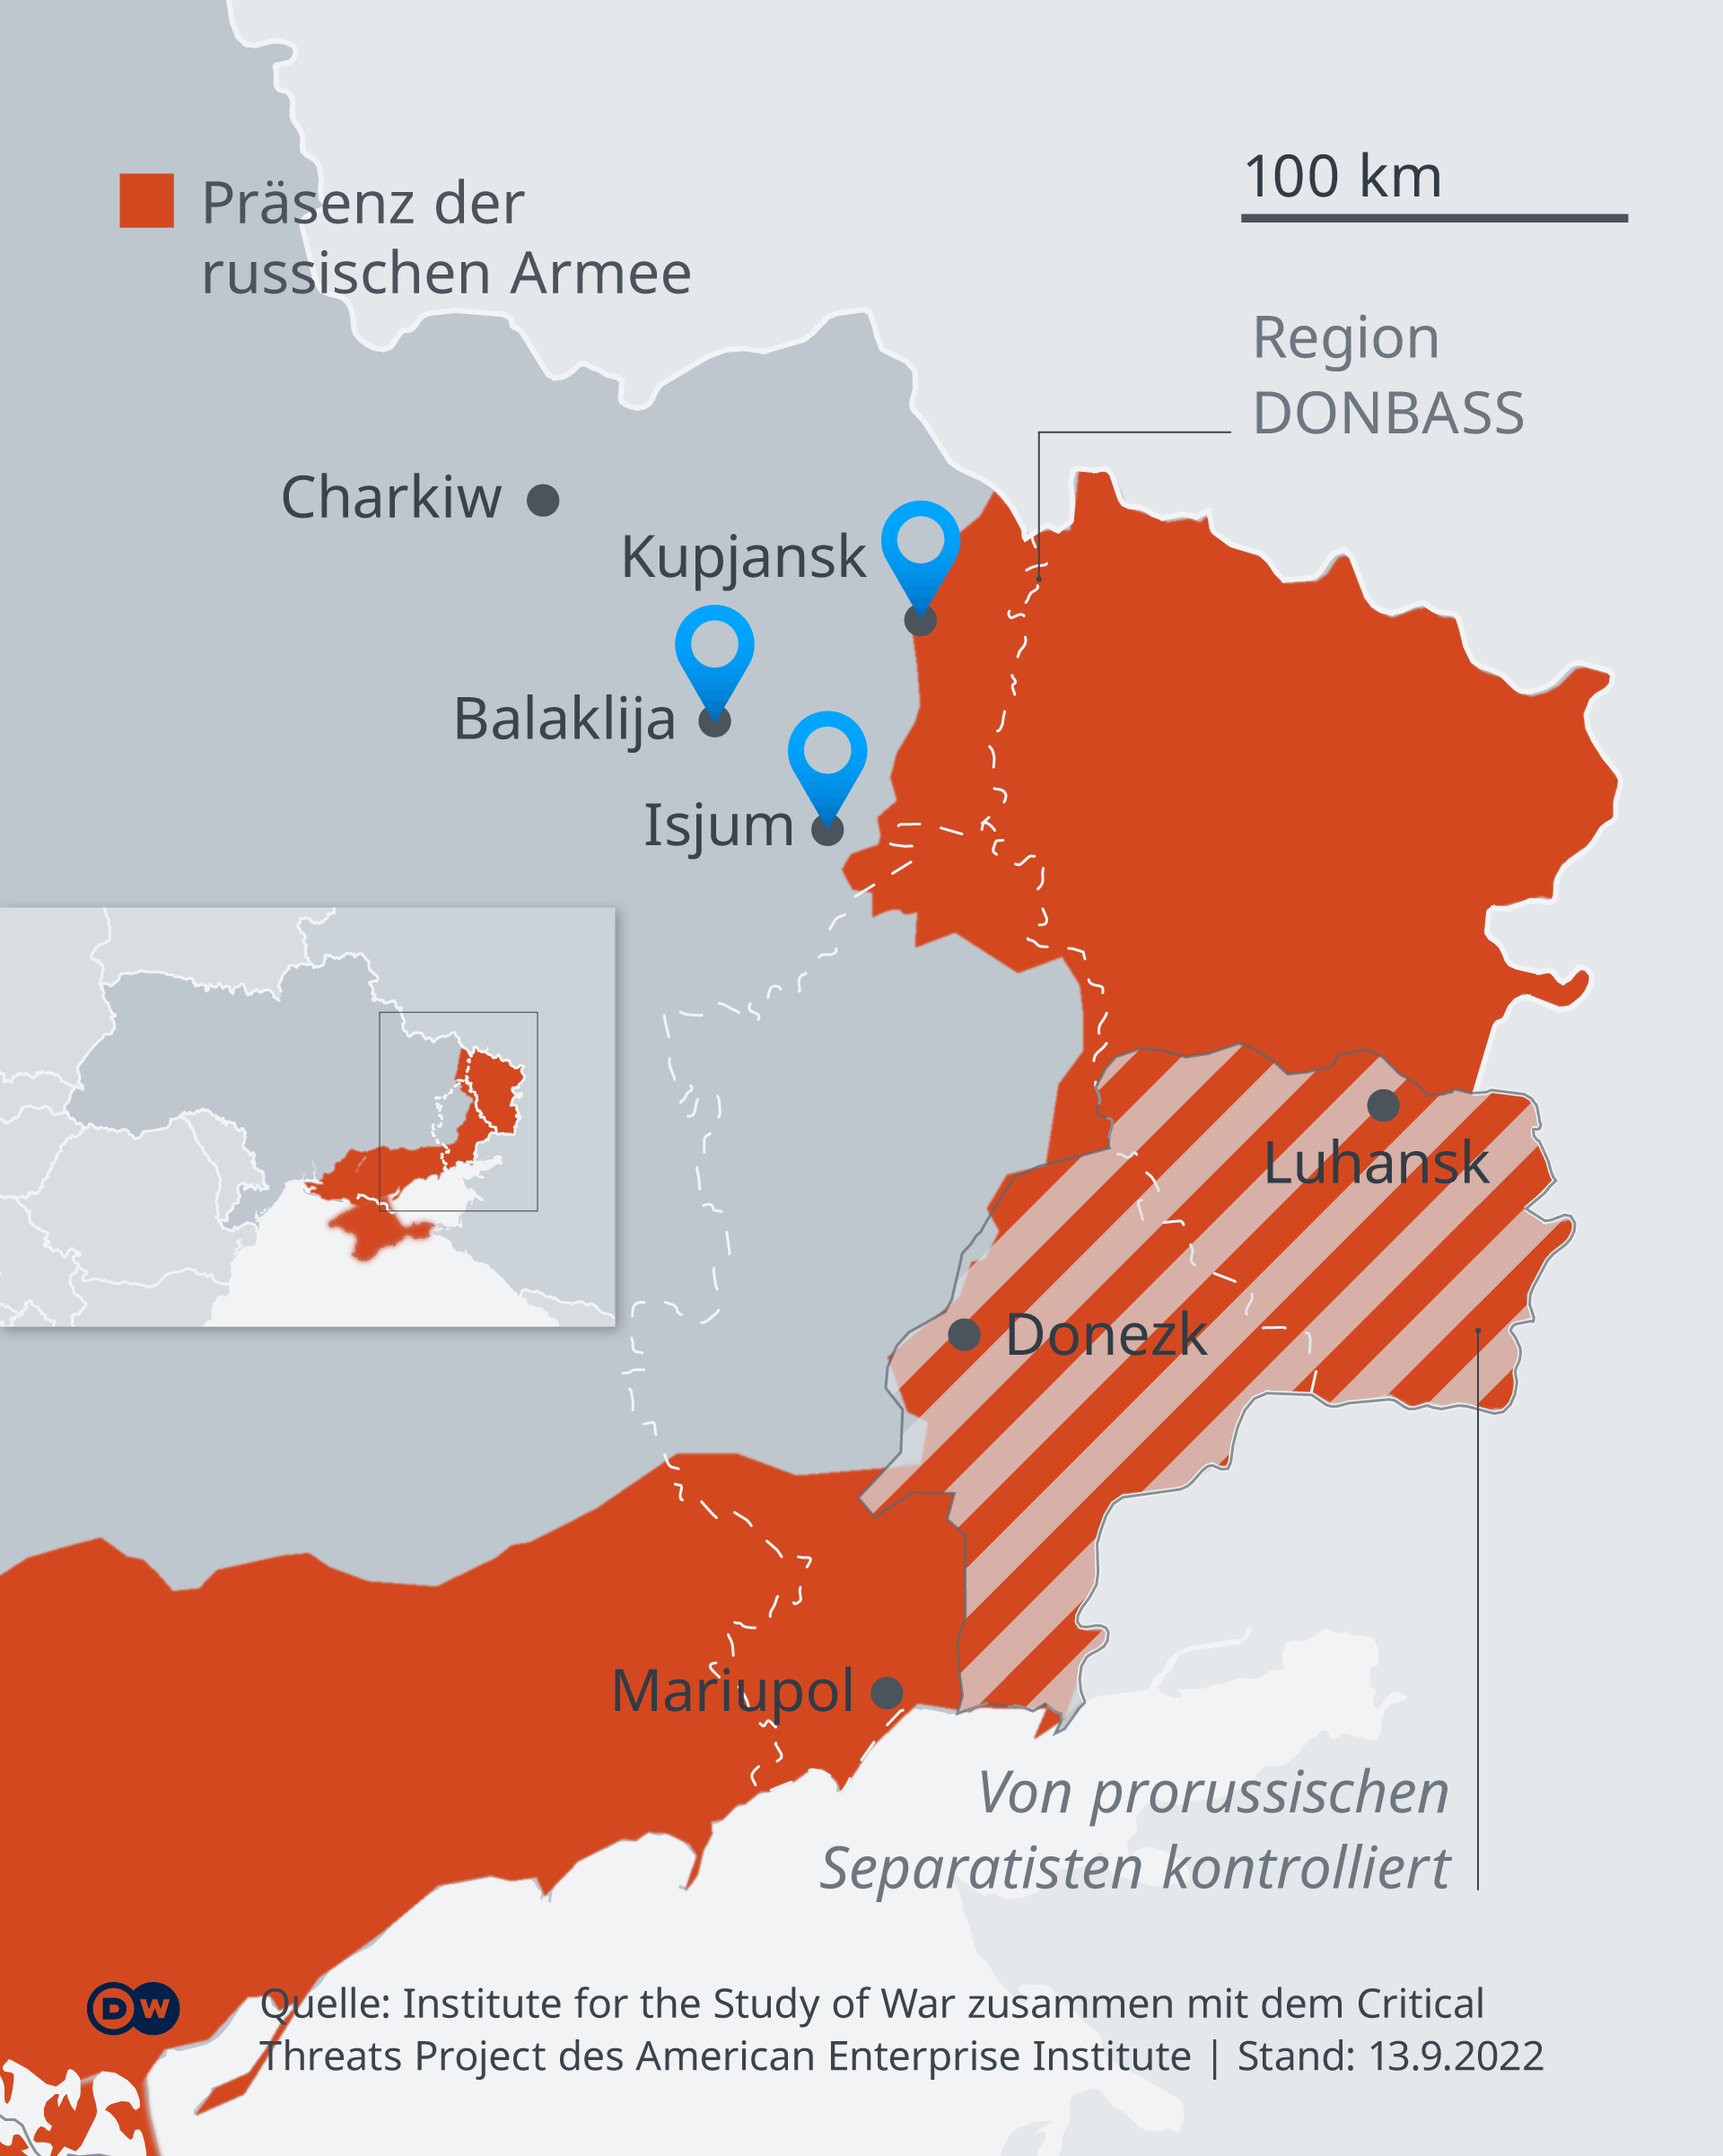 Πόλεις που ανακατέλαβε η Ουκρανία